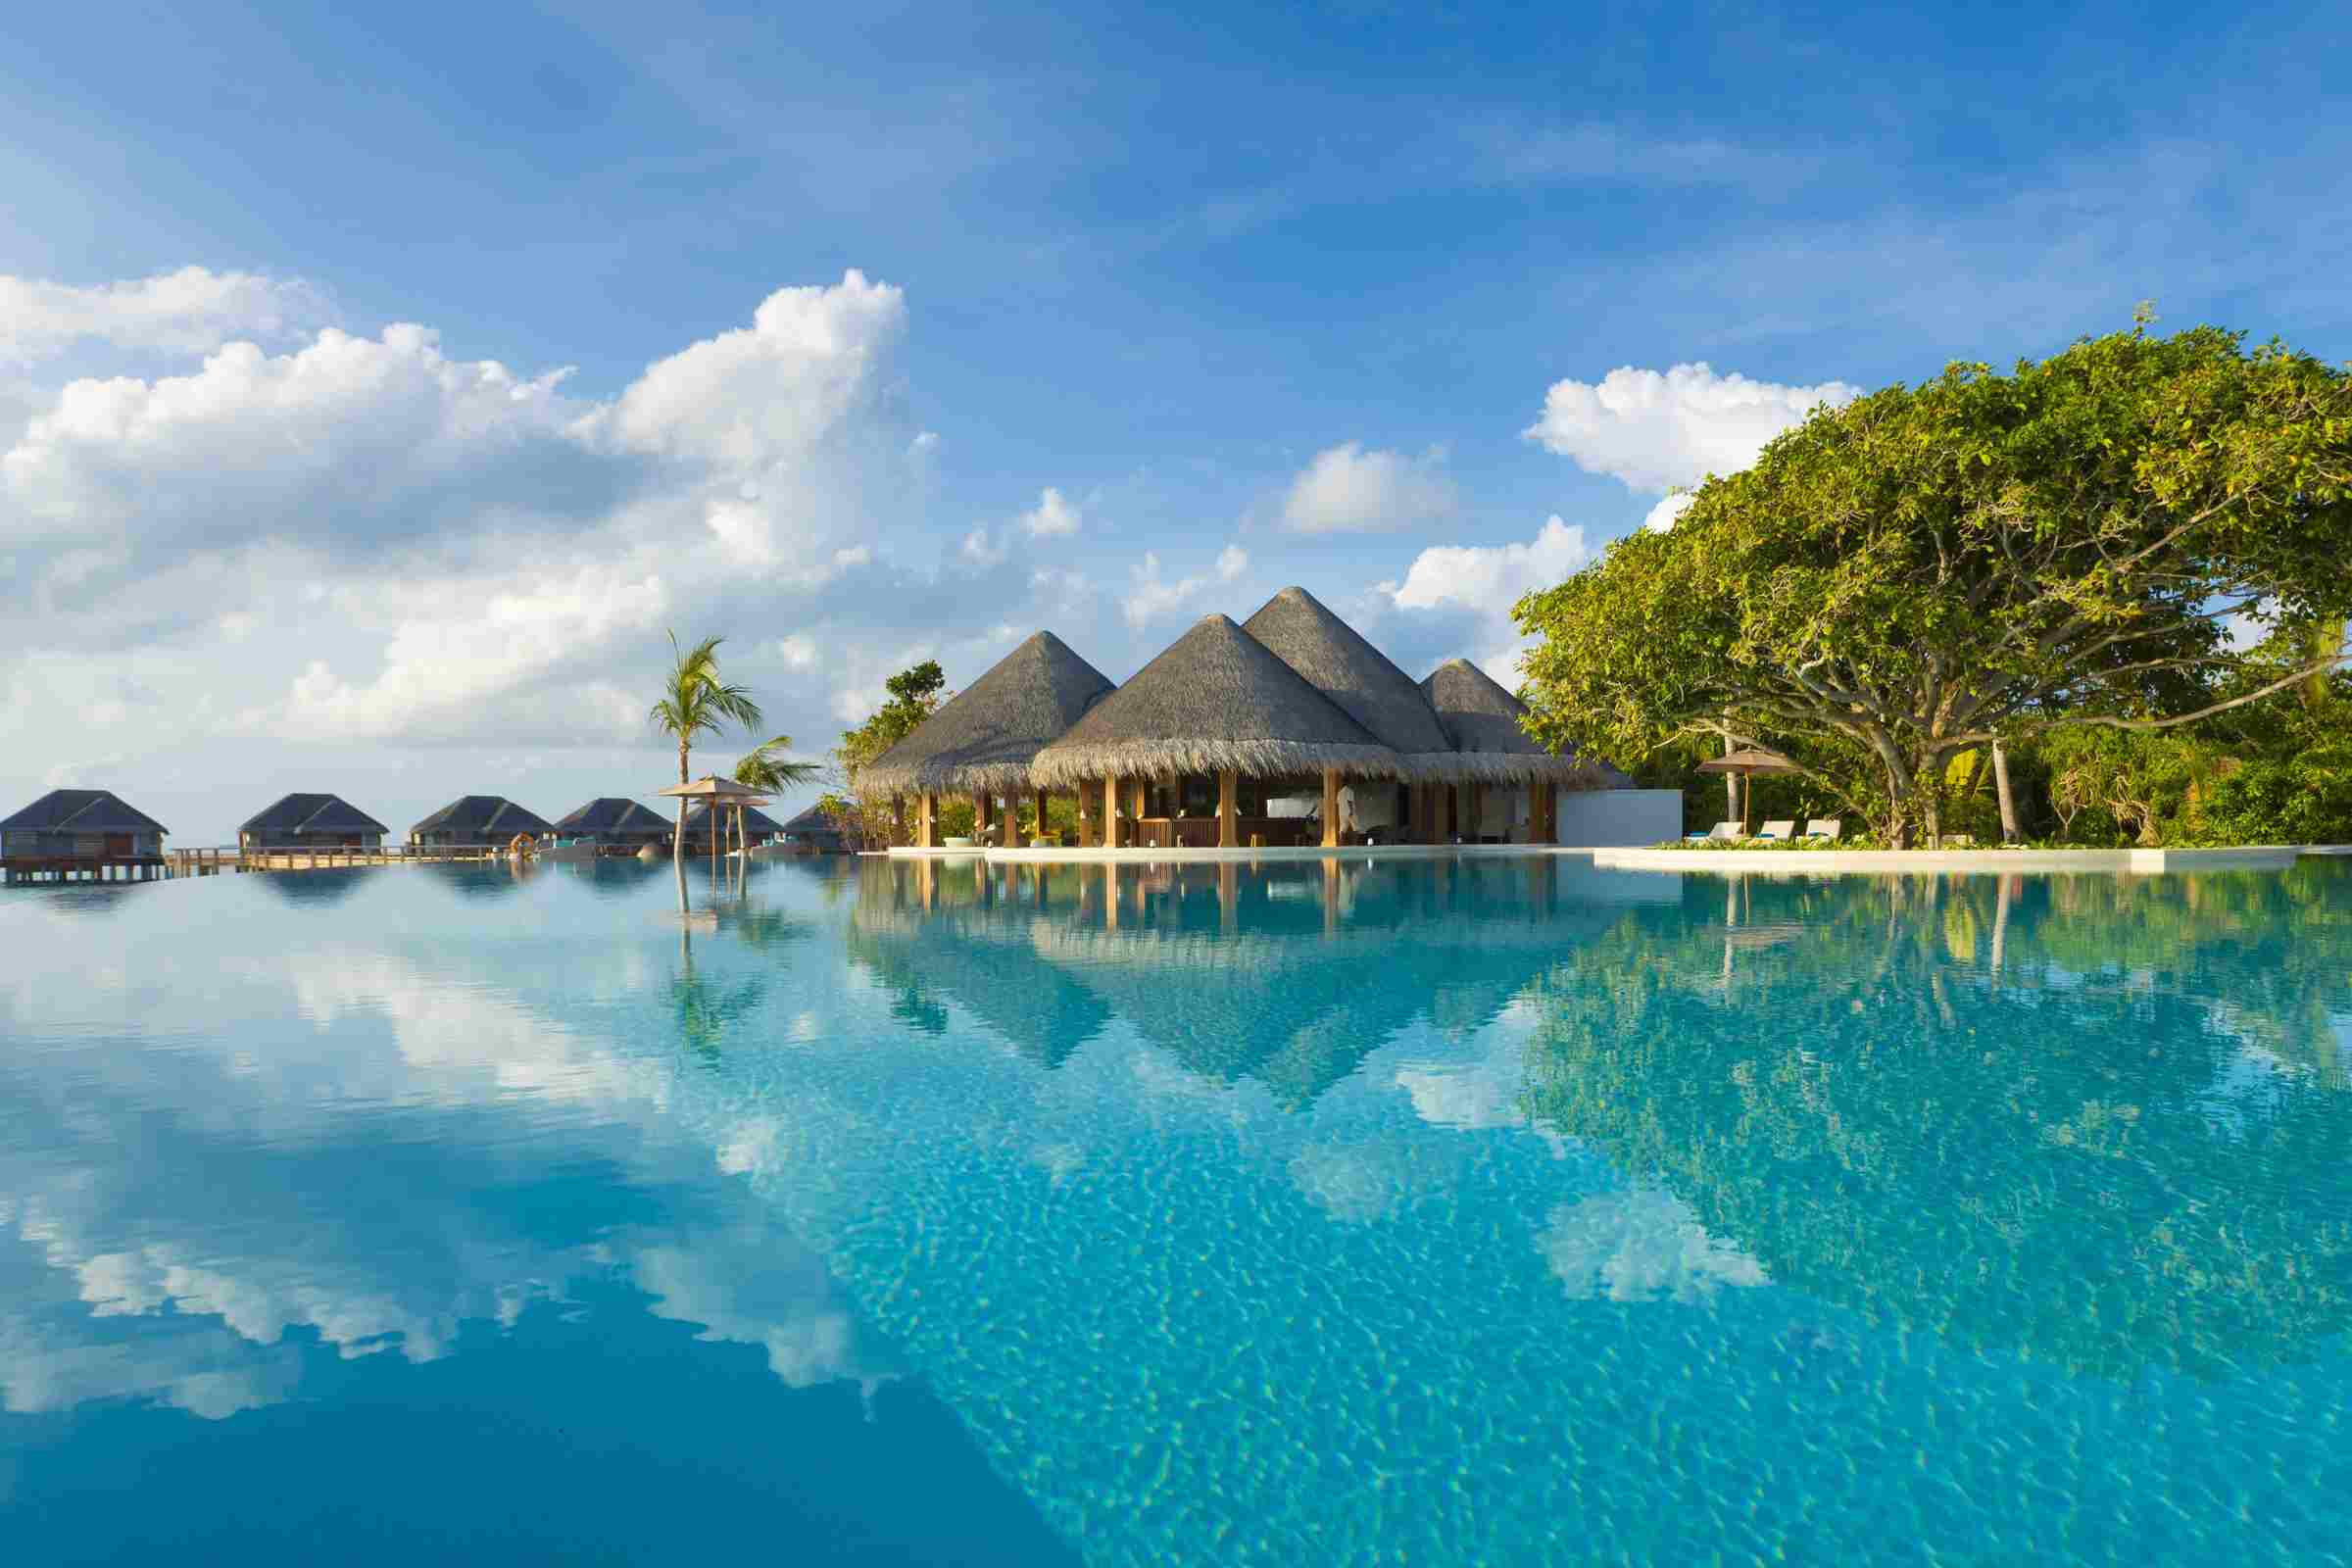 马尔代夫翡诺岛Finolhu Villas房型、餐厅、活动攻略详解-七彩假期